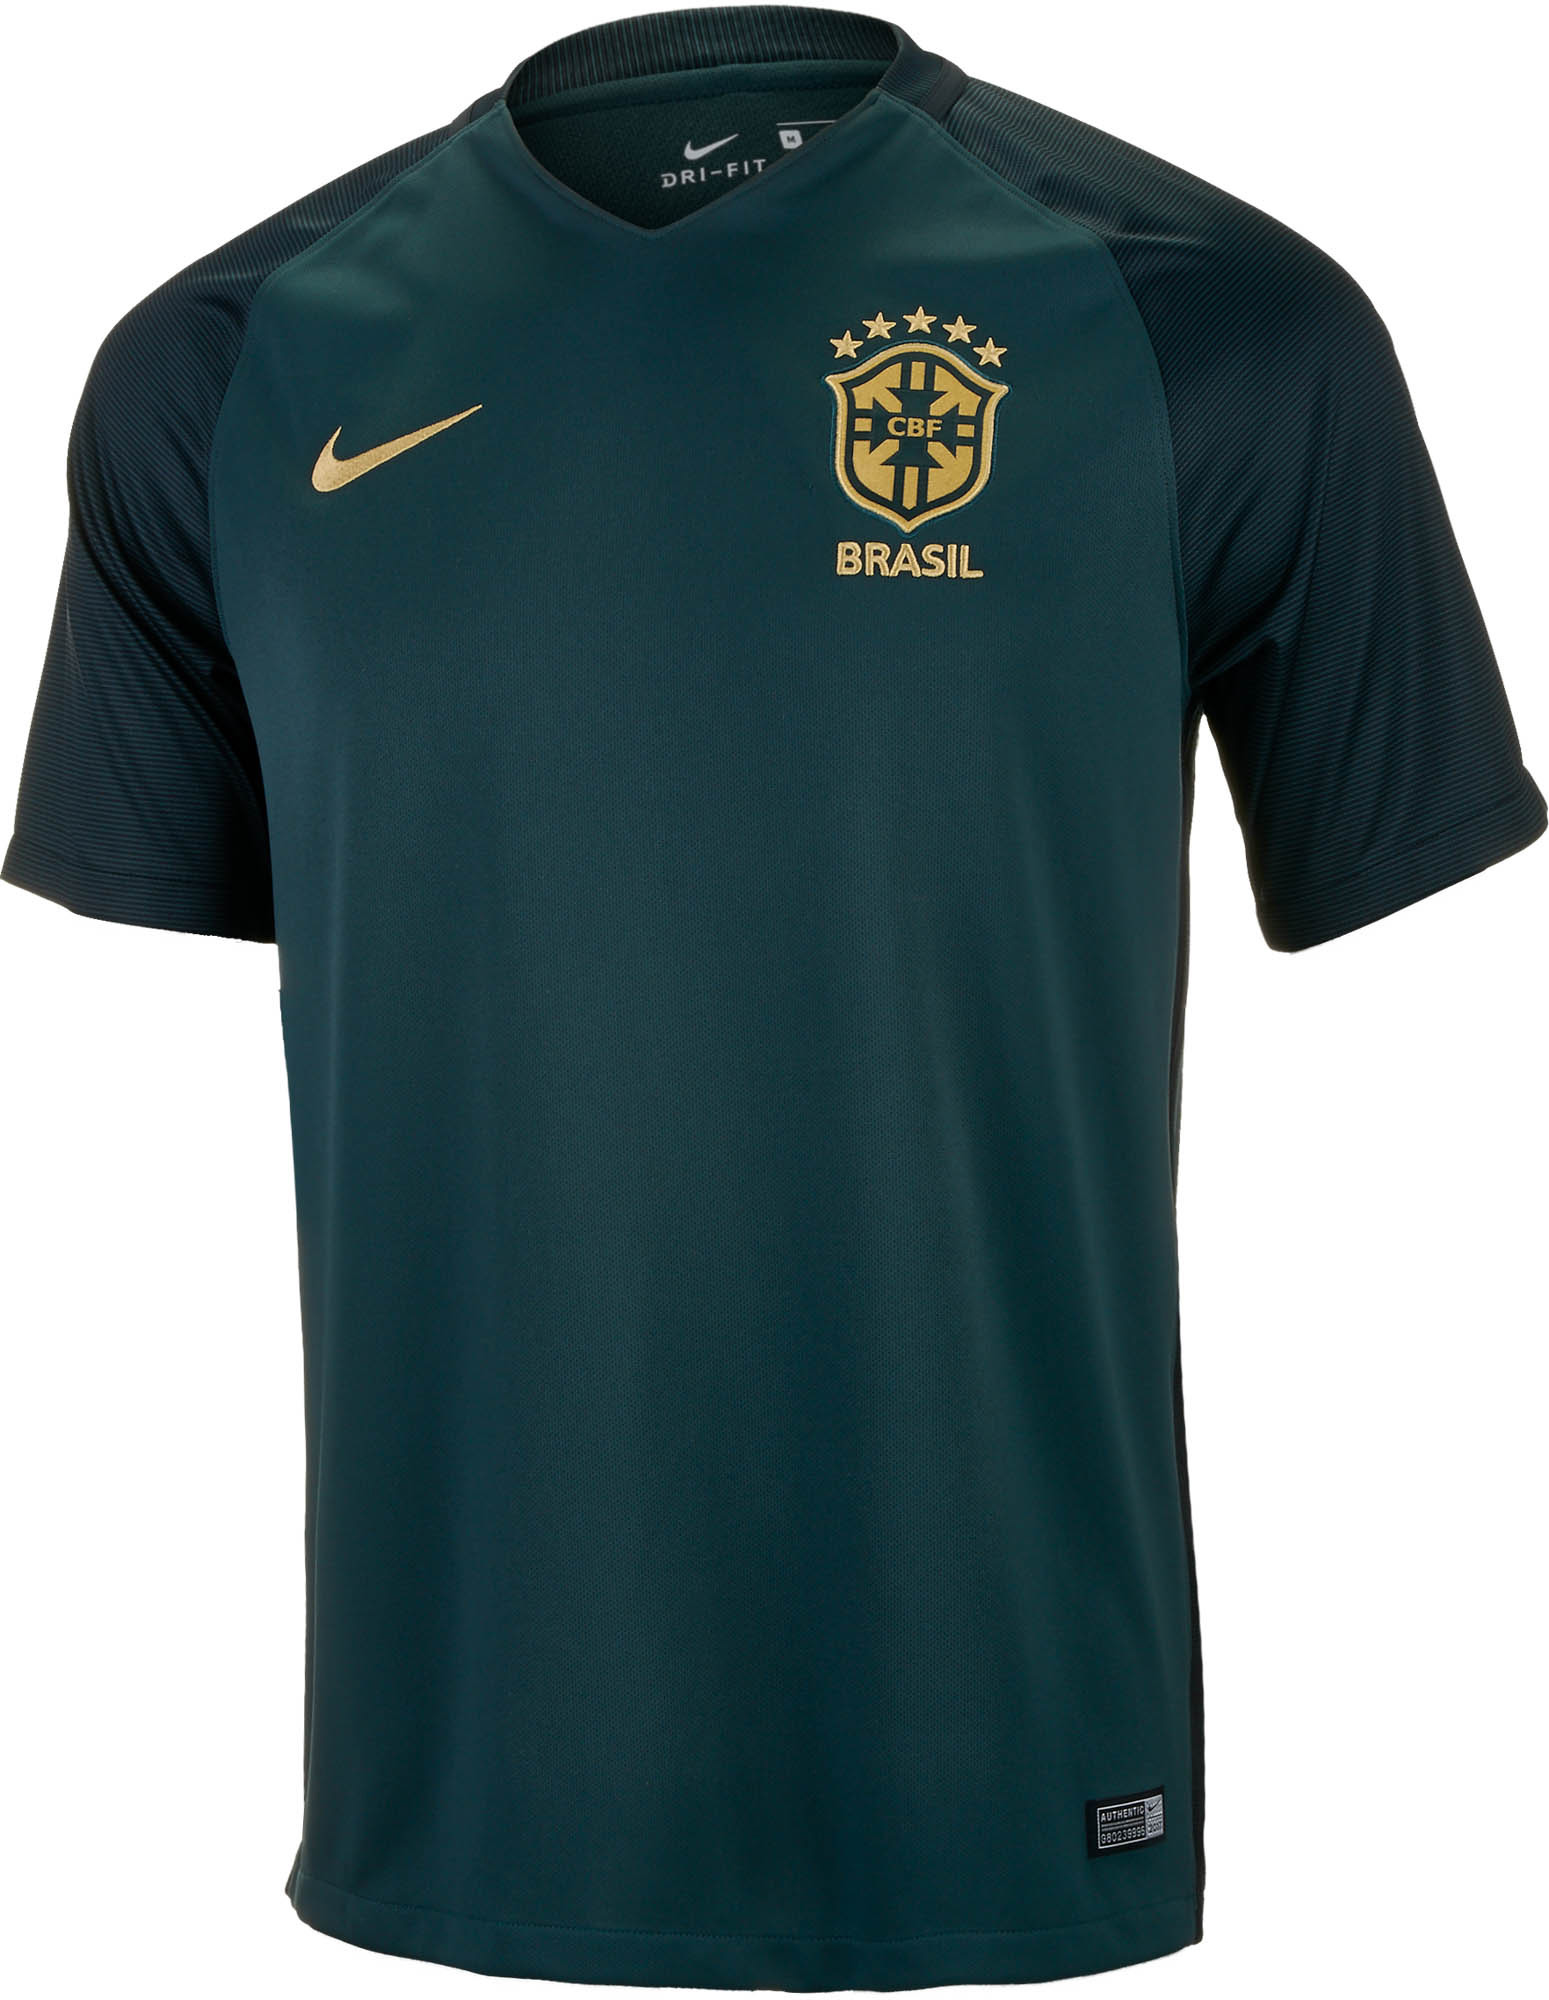 Brazil Soccer Jerseys